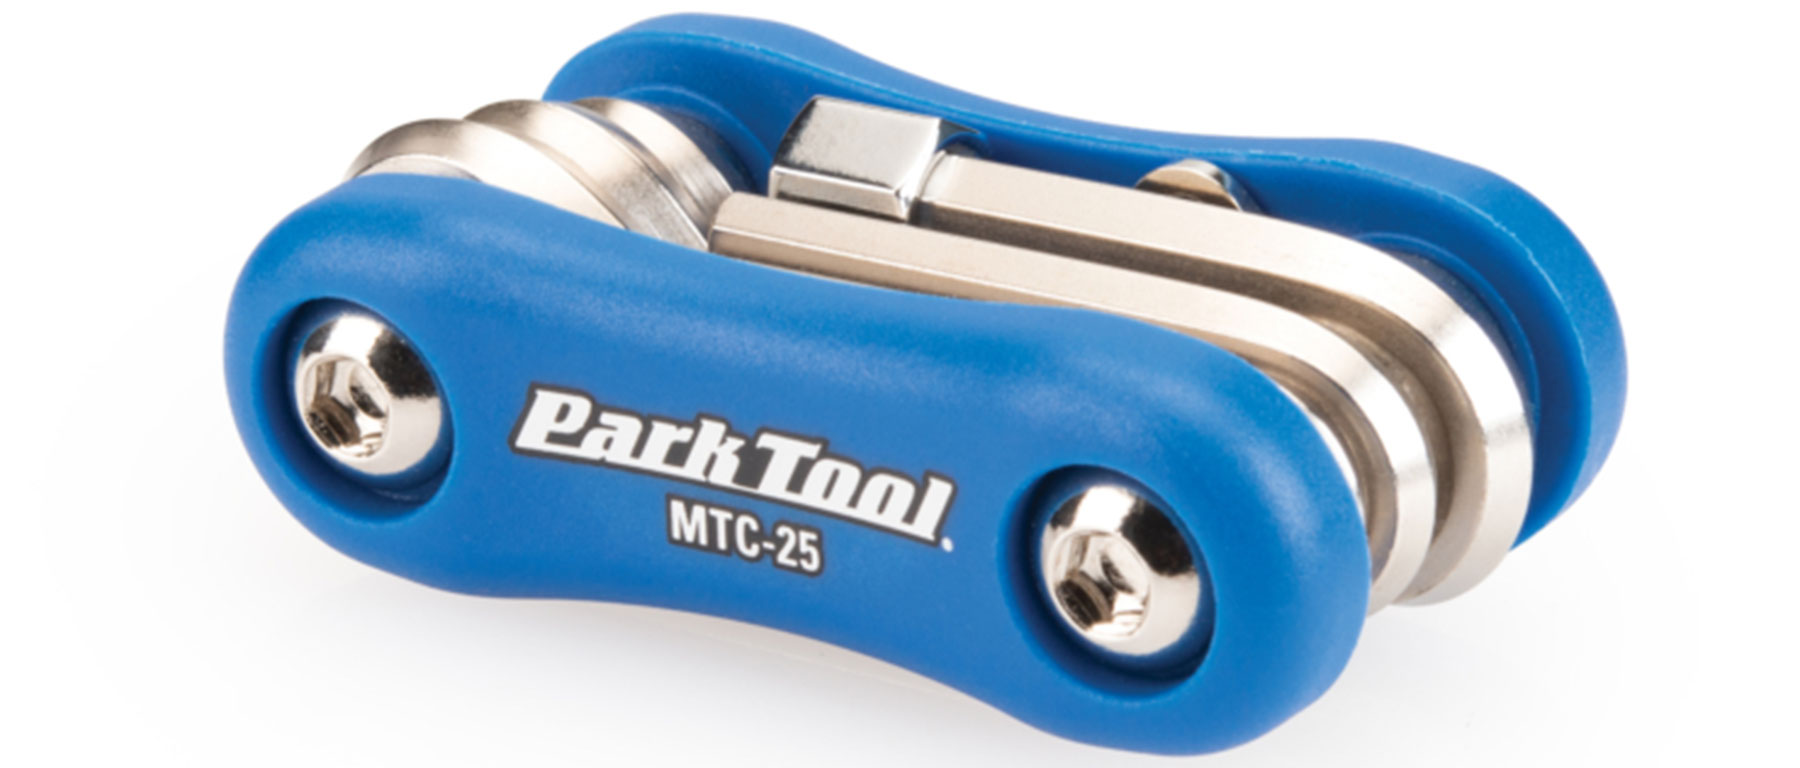 Park Tool MTC-25 Multi-Tool